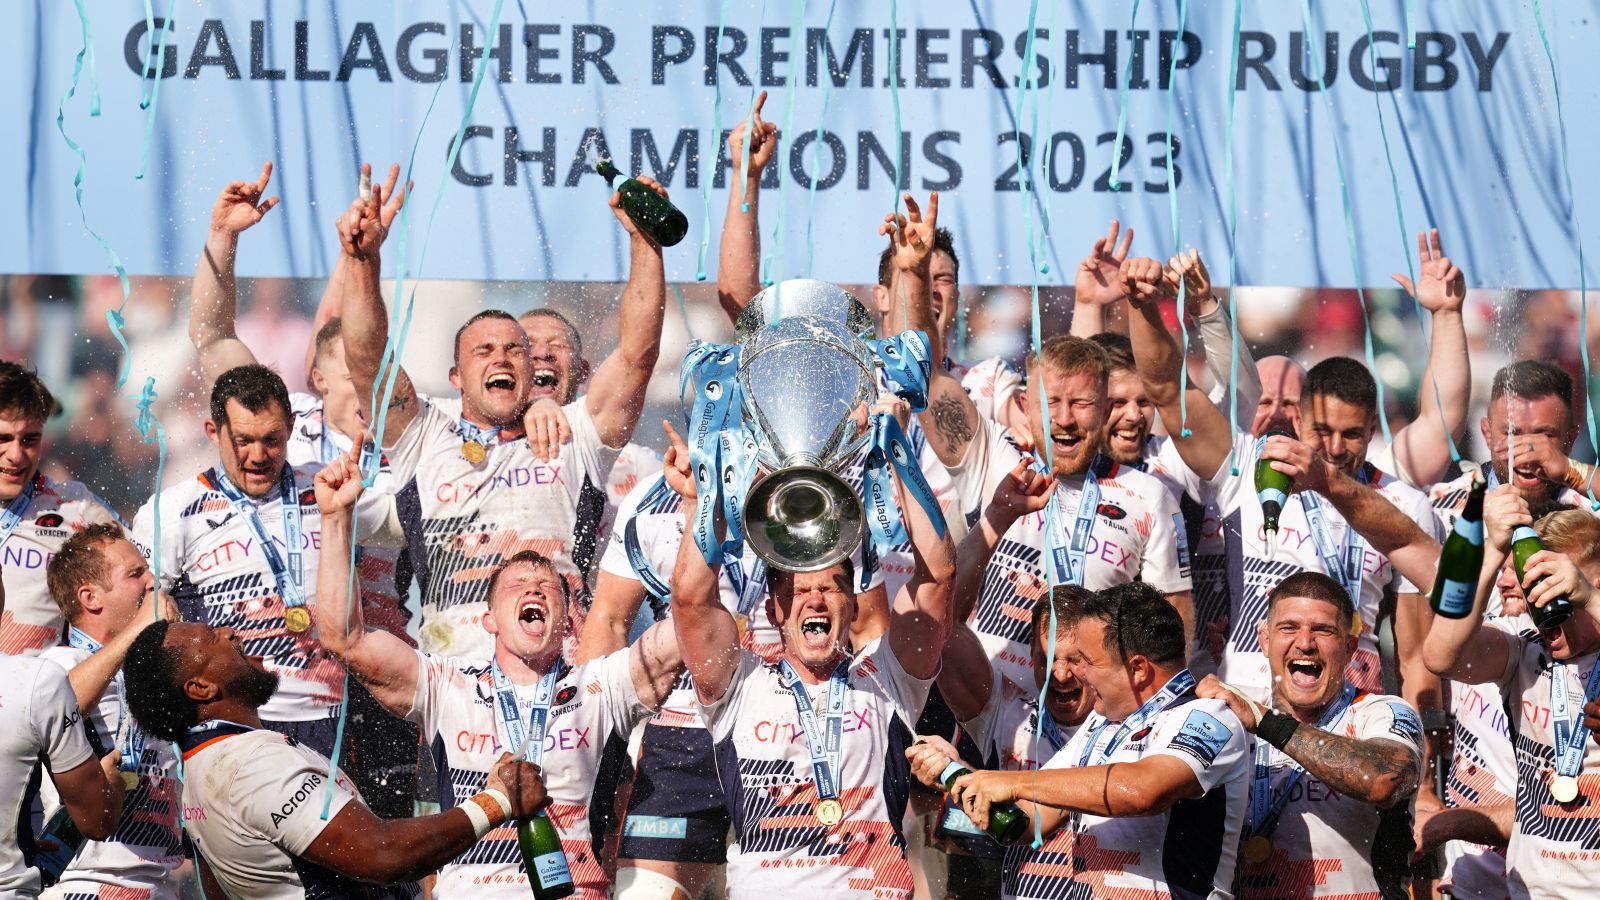  Premiership-rugby is een professionele rugbycompetitie in Engeland, die bestaat uit twaalf clubs. Het is de hoogste divisie van het Engelse rugby en wordt beschouwd als een van de sterkste competities ter wereld. De competitie begon in 1987 en wordt elk jaar gespeeld van september tot mei. De winnaar van de Premiership-rugby wordt gekroond tot kampioen van Engeland. 